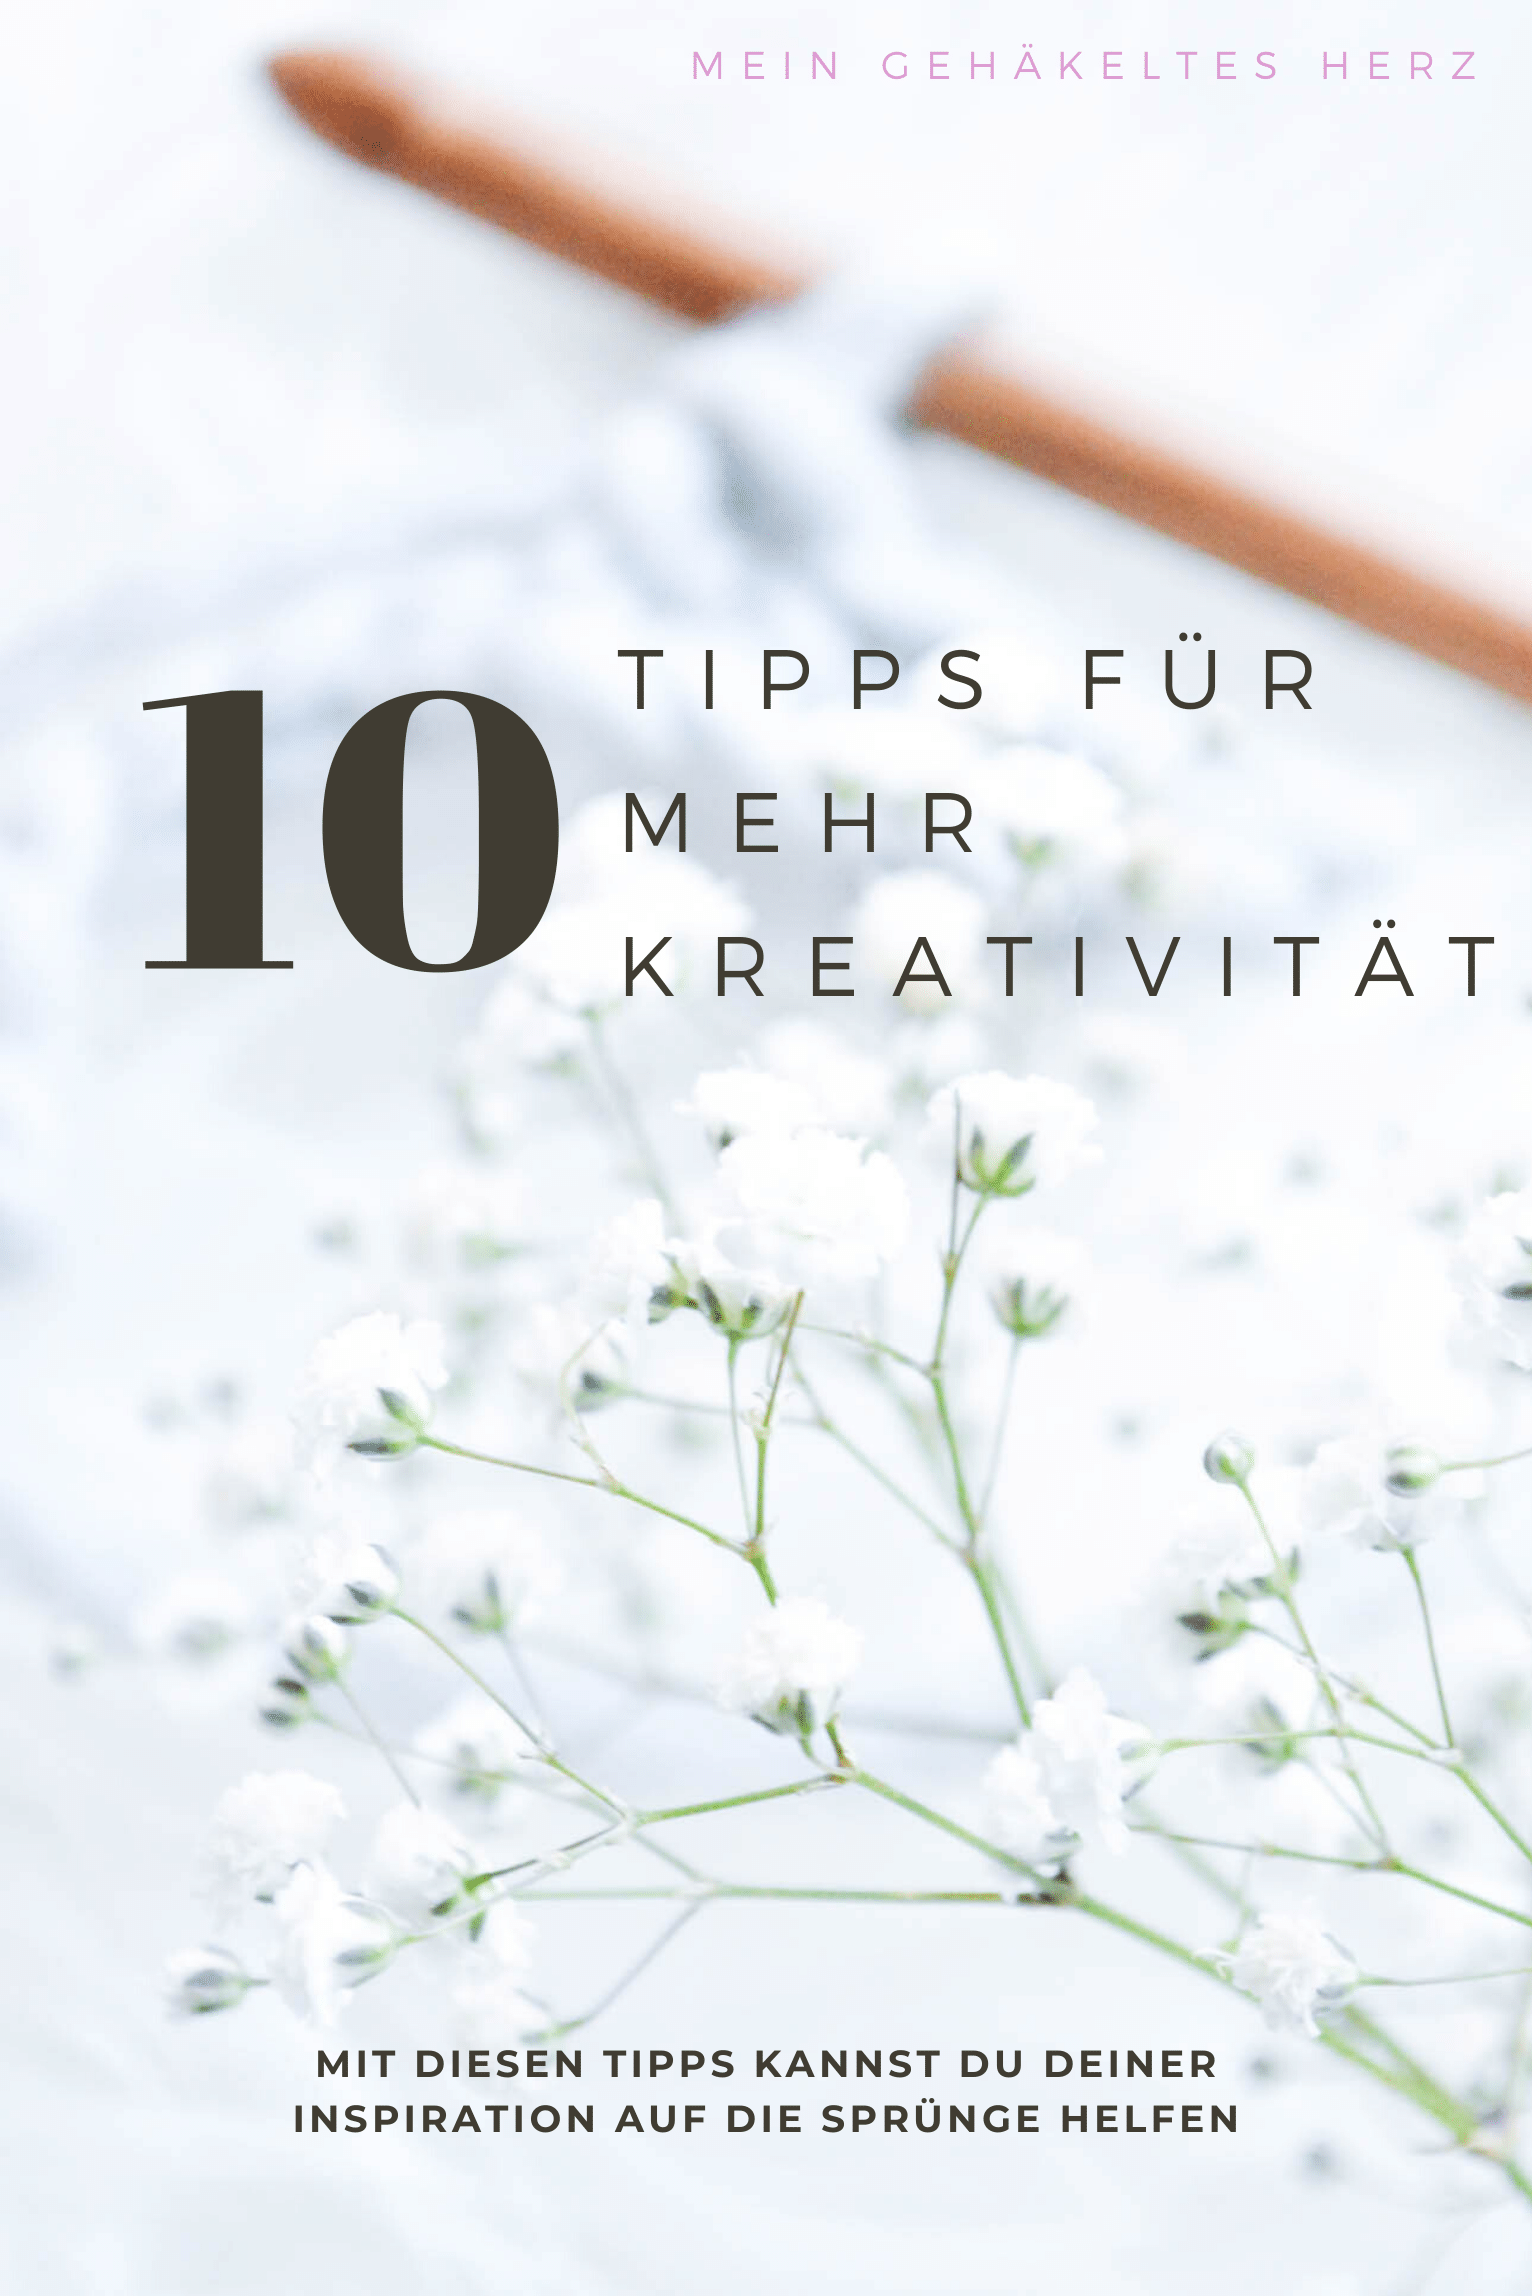 10 Tipps gegen das Kreativitätstief